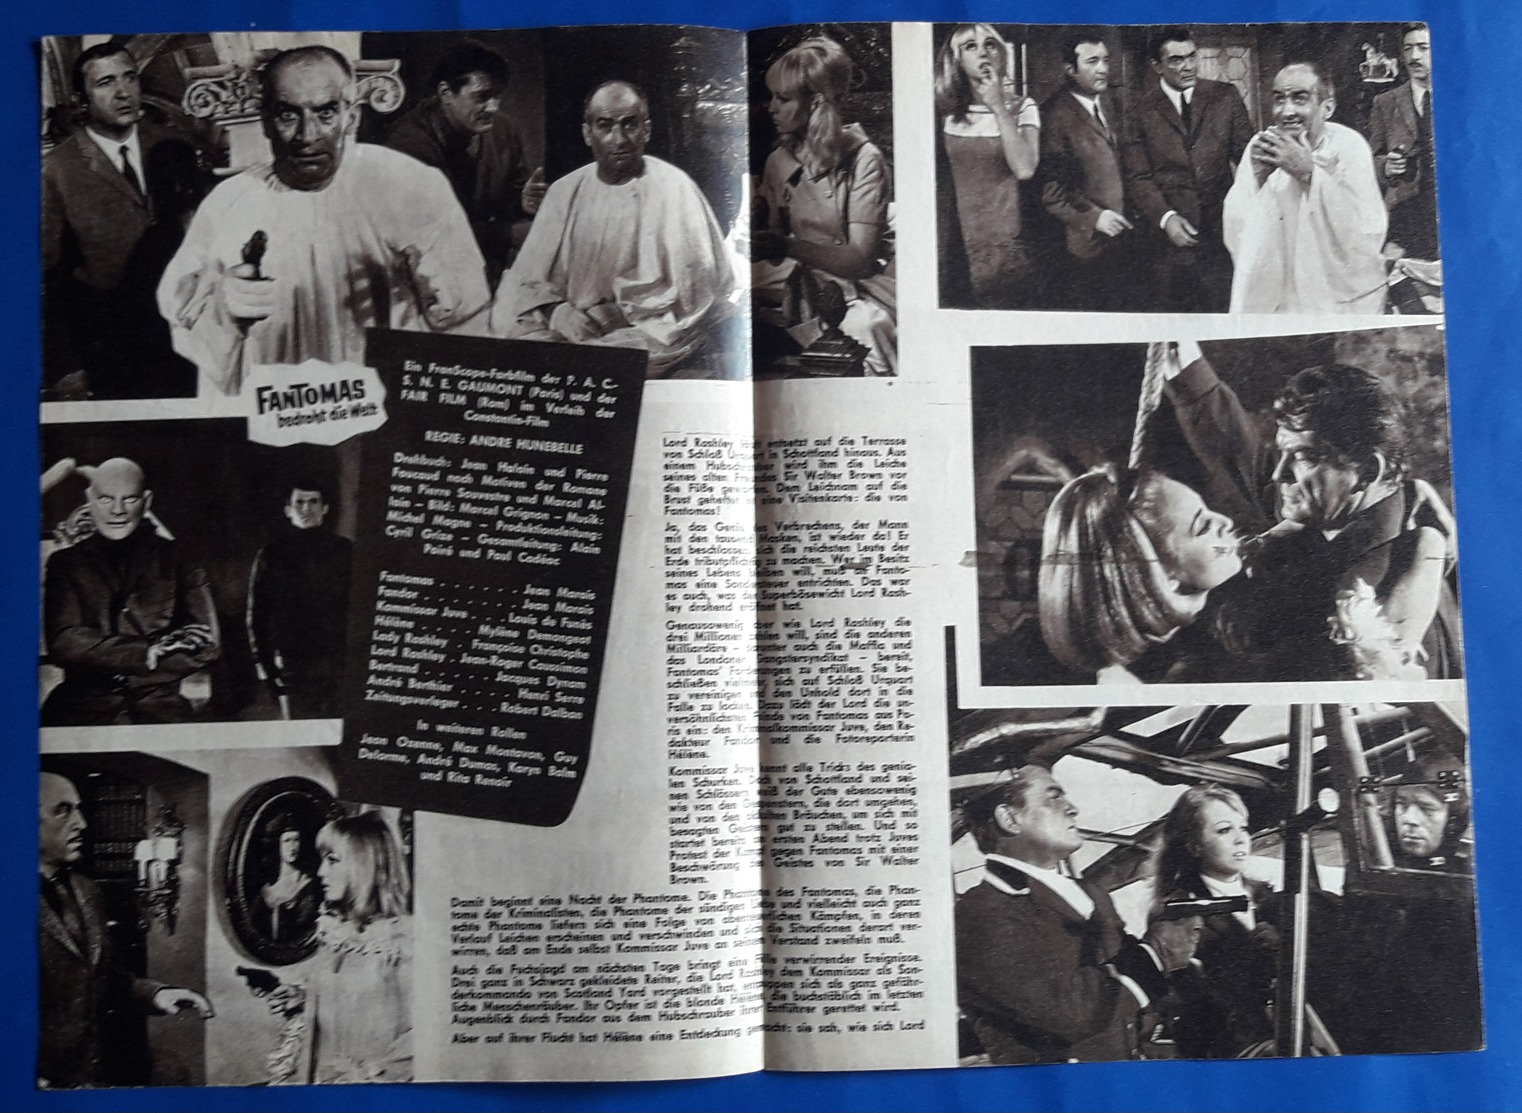 LOUIS DE FUNES / JEAN MARAIS Im Film "FANTOMAS Bedroht Die Welt" # NFP-Filmprogramm Von 1967 # [19-778] - Zeitschriften